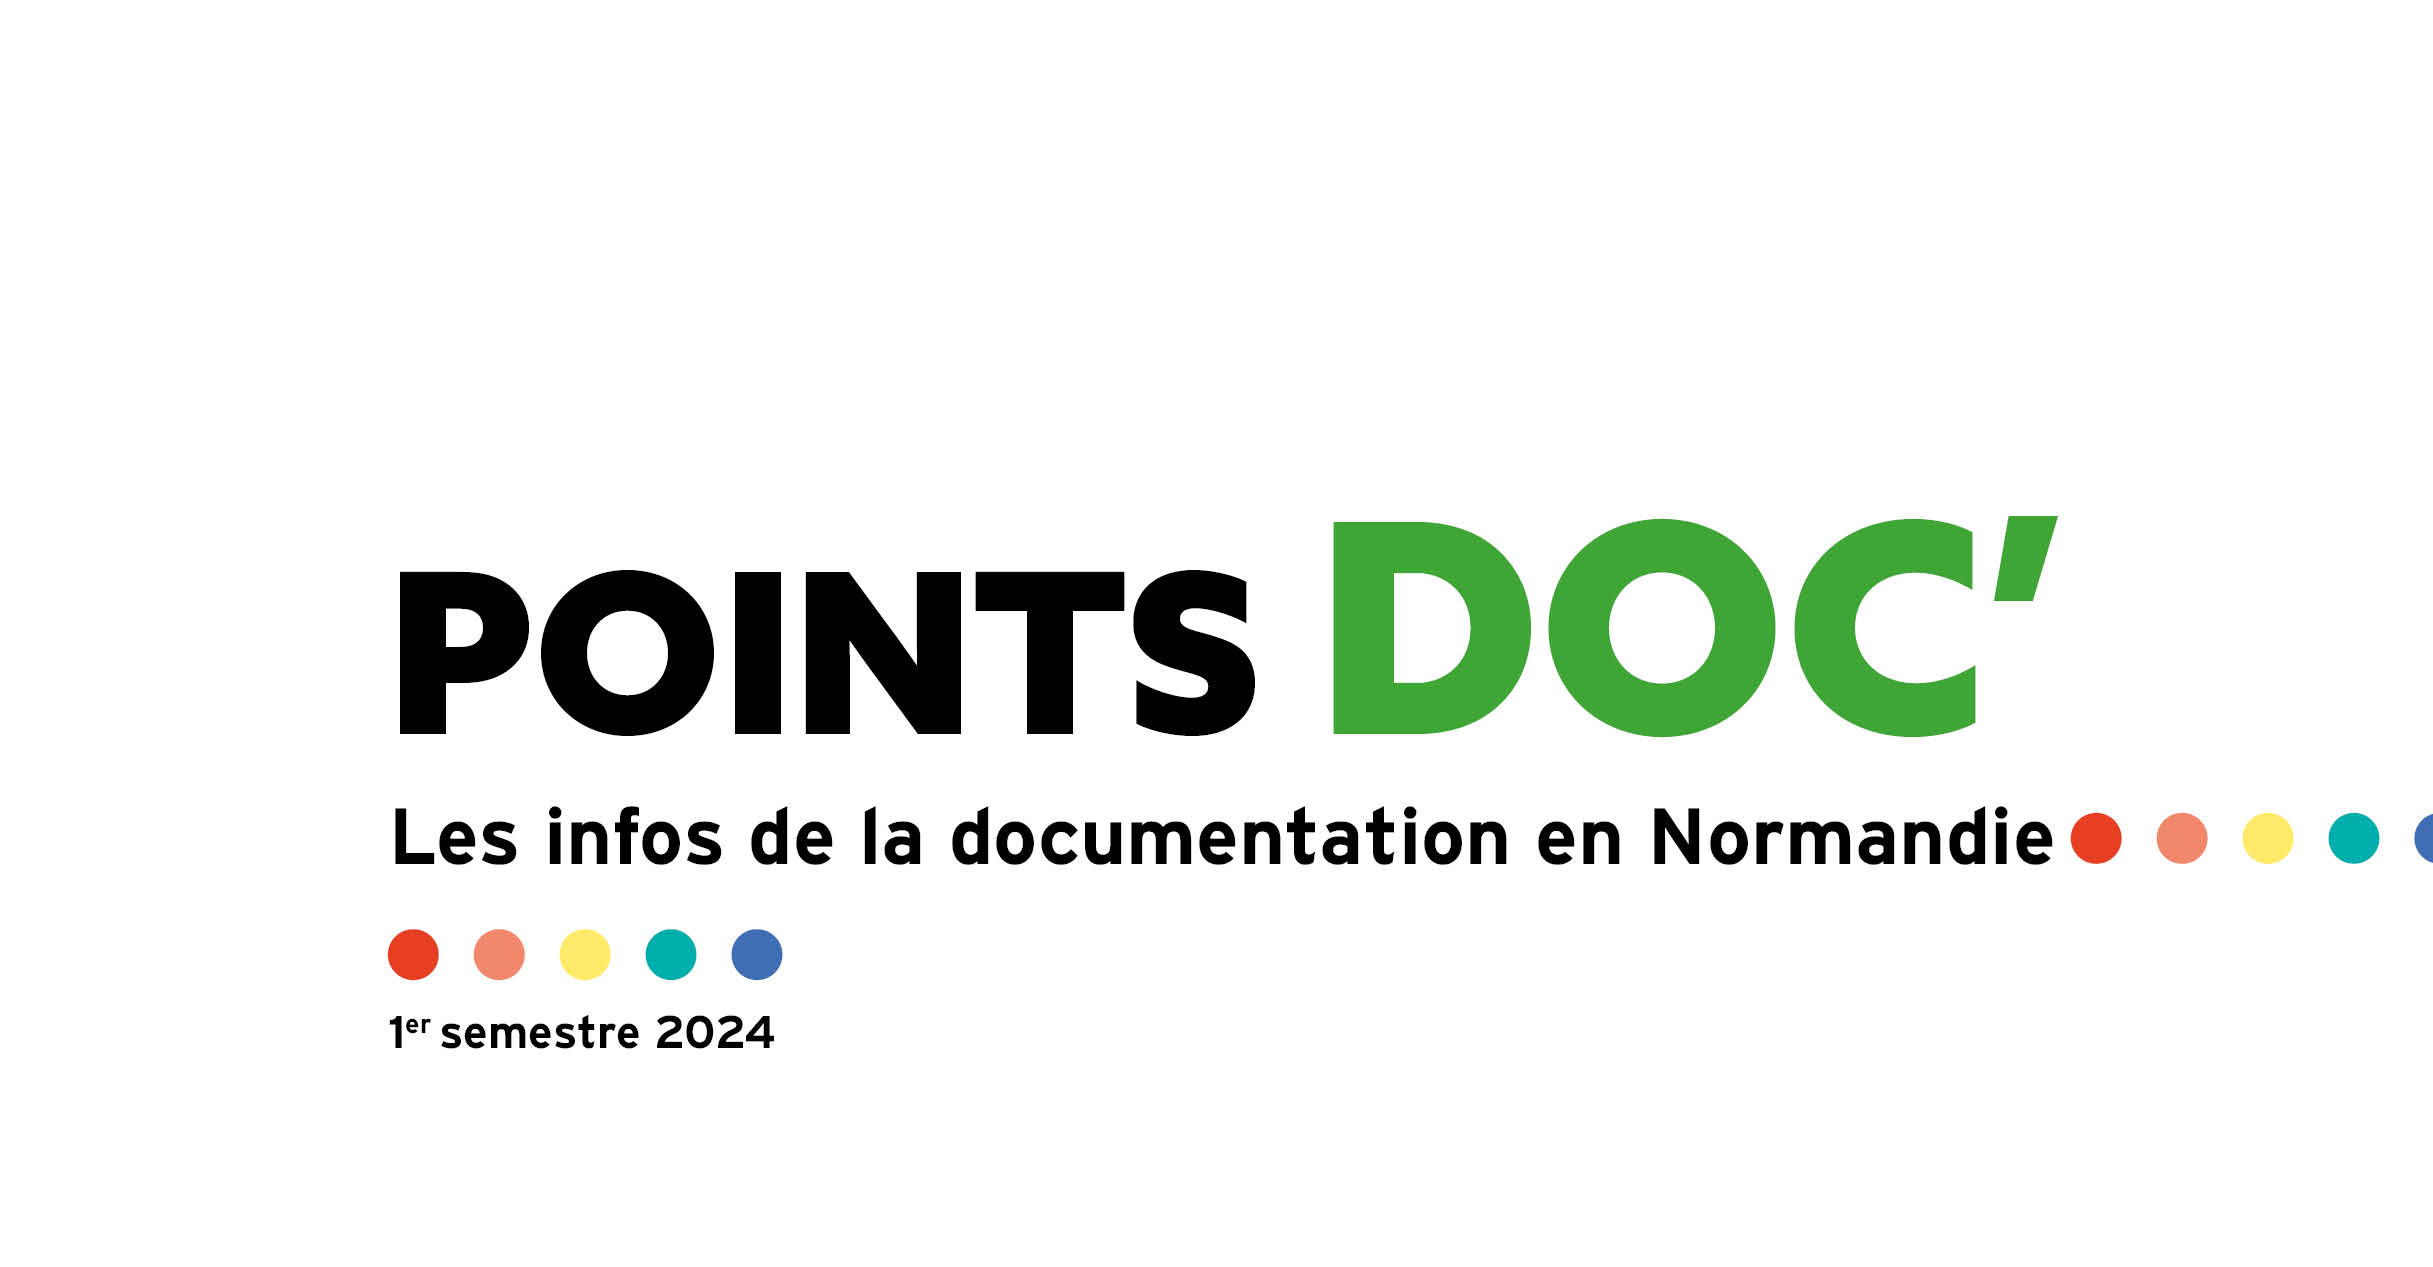 Points doc’ Les infos de la documentation en Normandie